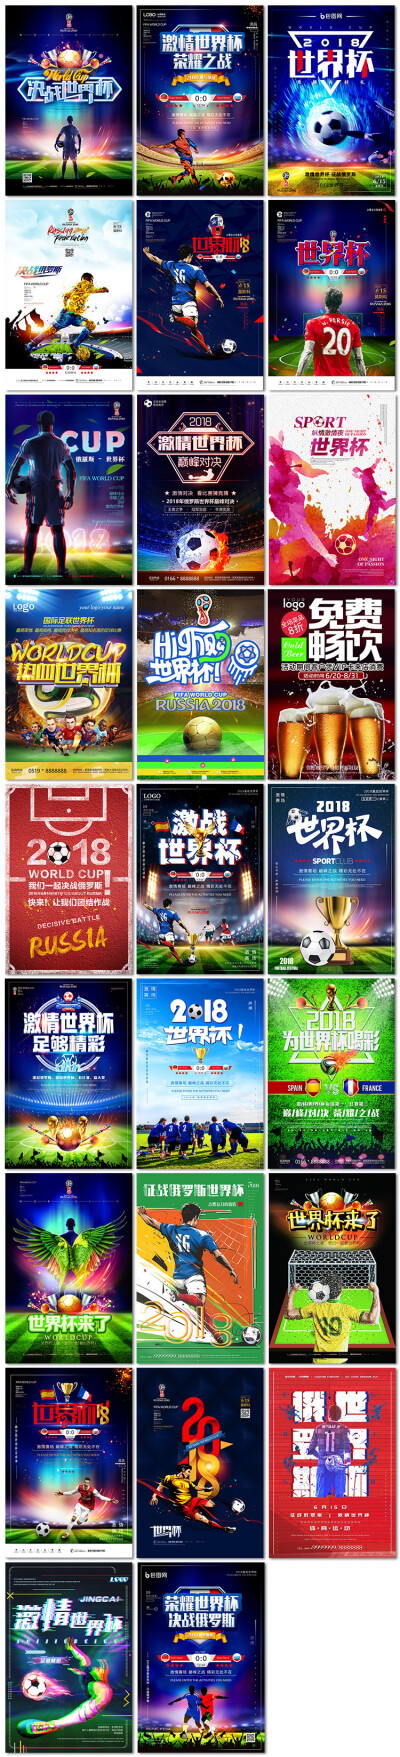 足球世界杯比赛体育运动俄罗斯酒吧活动宣传海报设计PSD素材模板